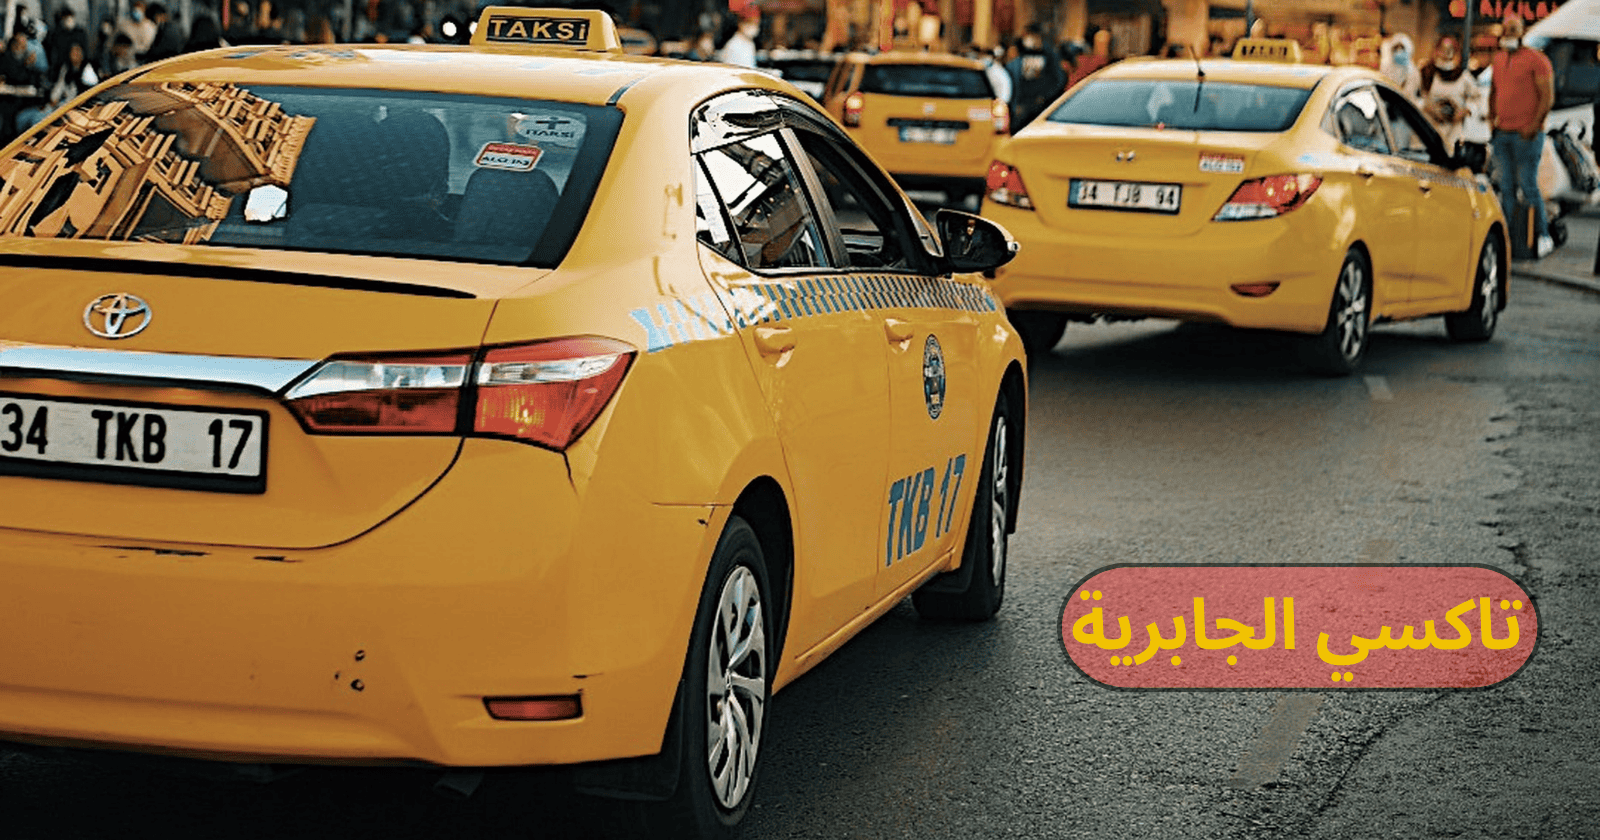 تاكسي الجابرية